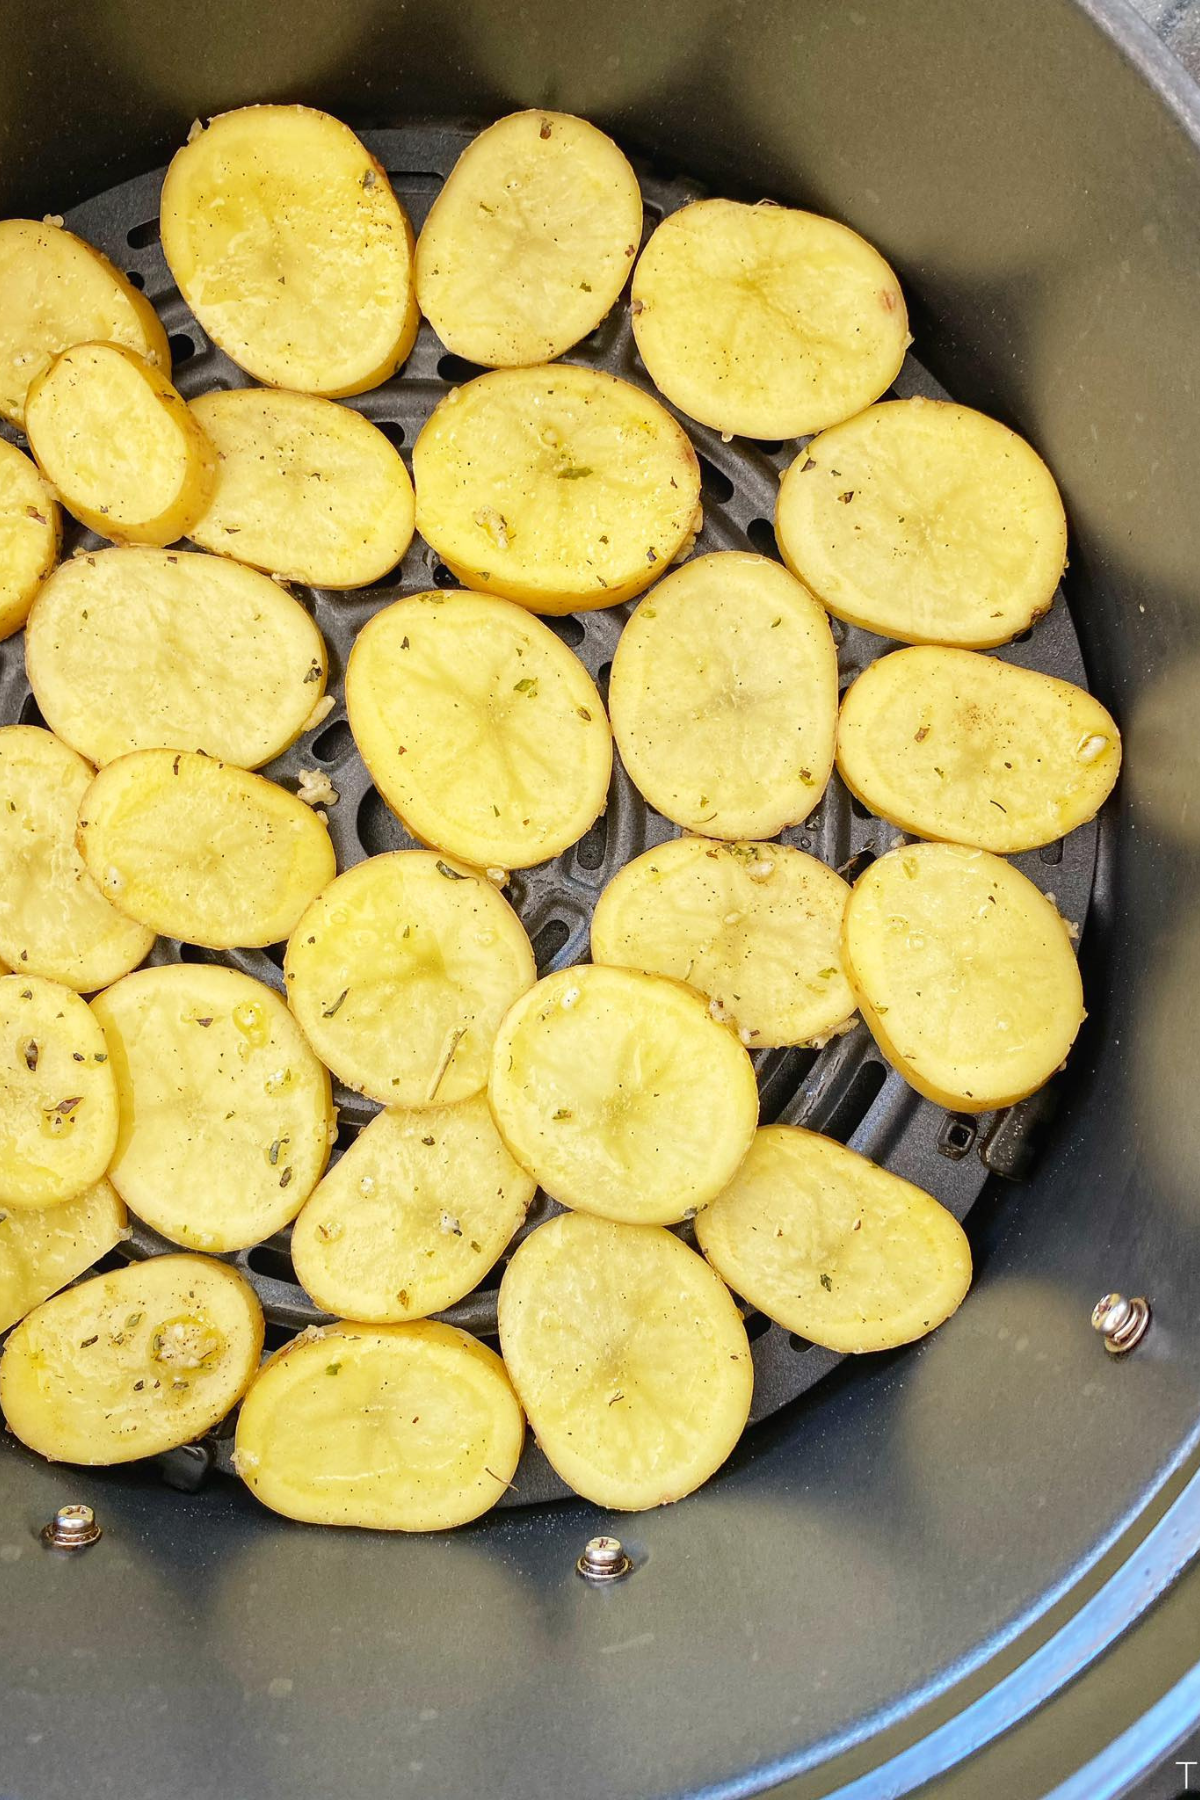 sliced-potatoes-in-air-fryer-basket